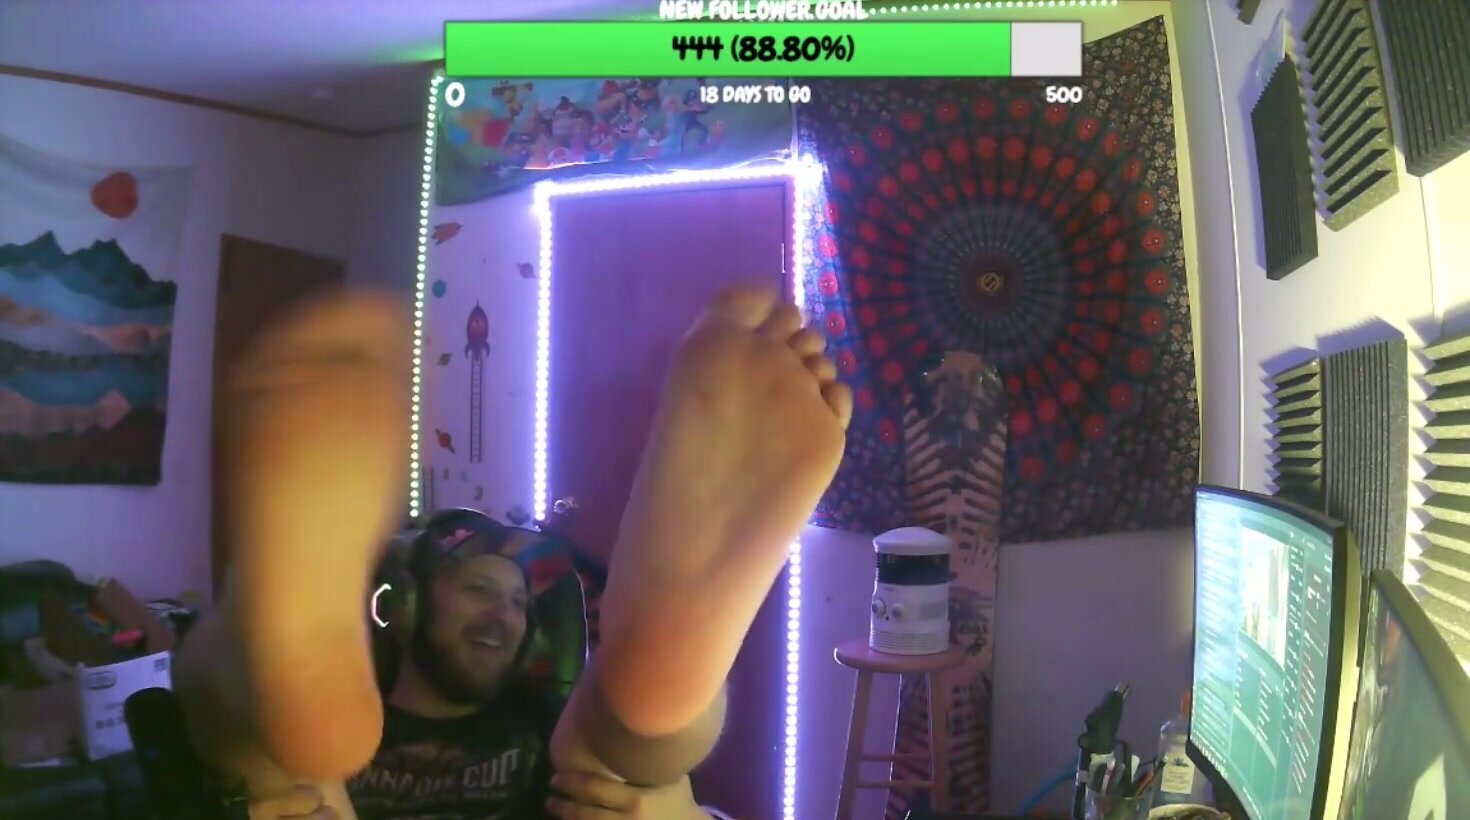 Dad shows off his soles